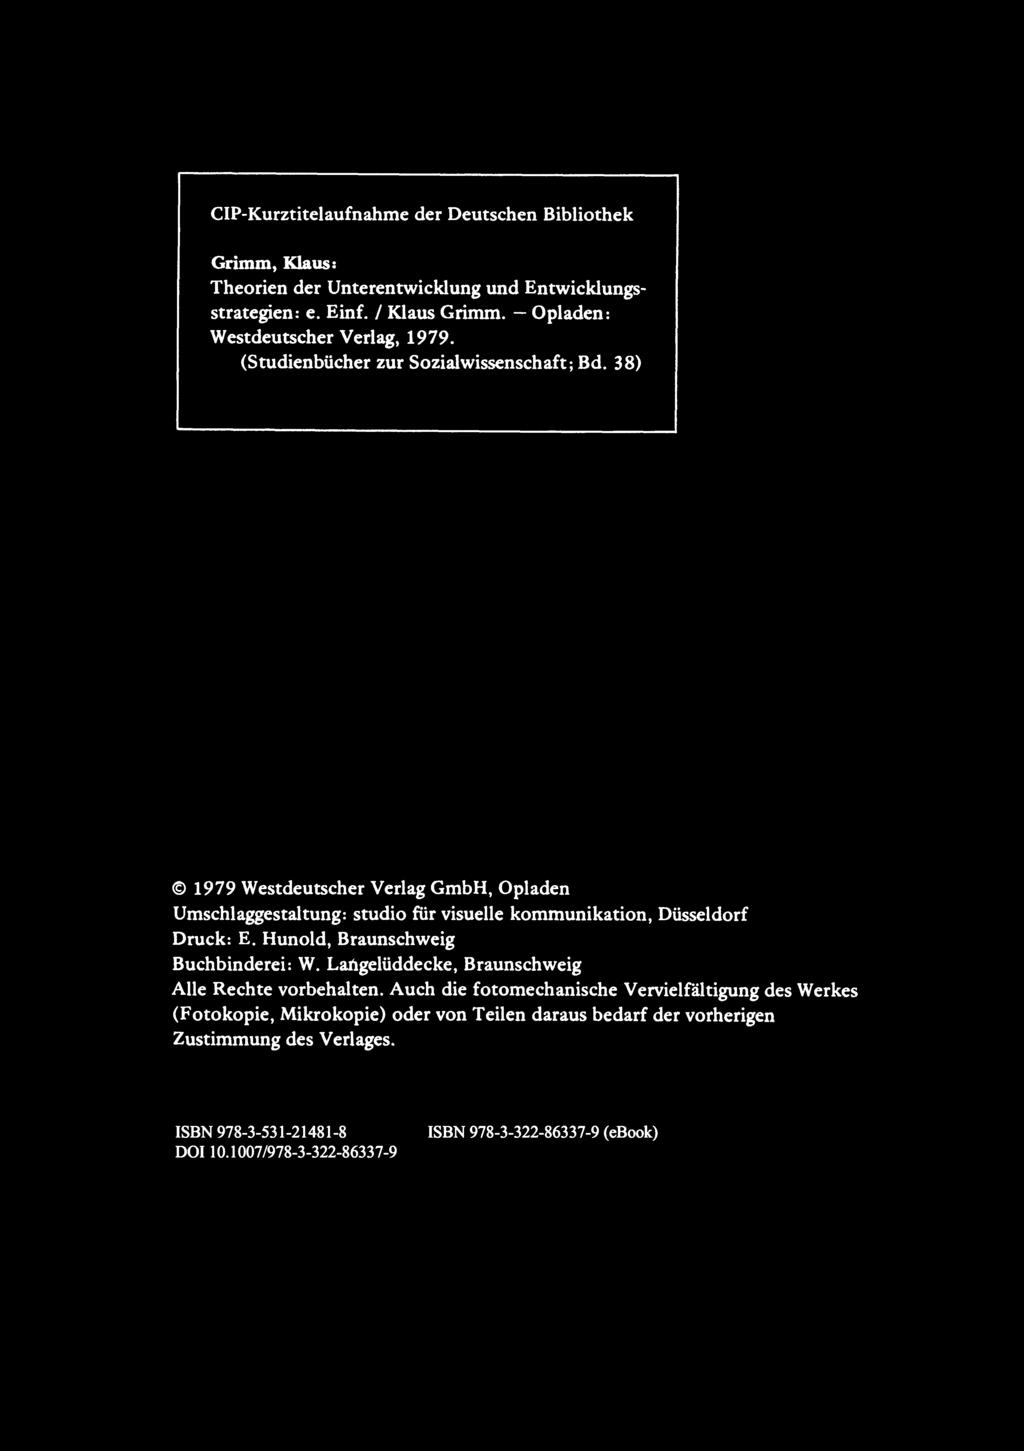 CIP-Kurztitelaufnahme der Deutschen Bibliothek Grimm, Klaus: Theorien der Unterentwicklung und Entwicklungsstrategien: e. Einf. I Klaus Grimm. - Opladen: Westdeutscher Verlag, 1979.